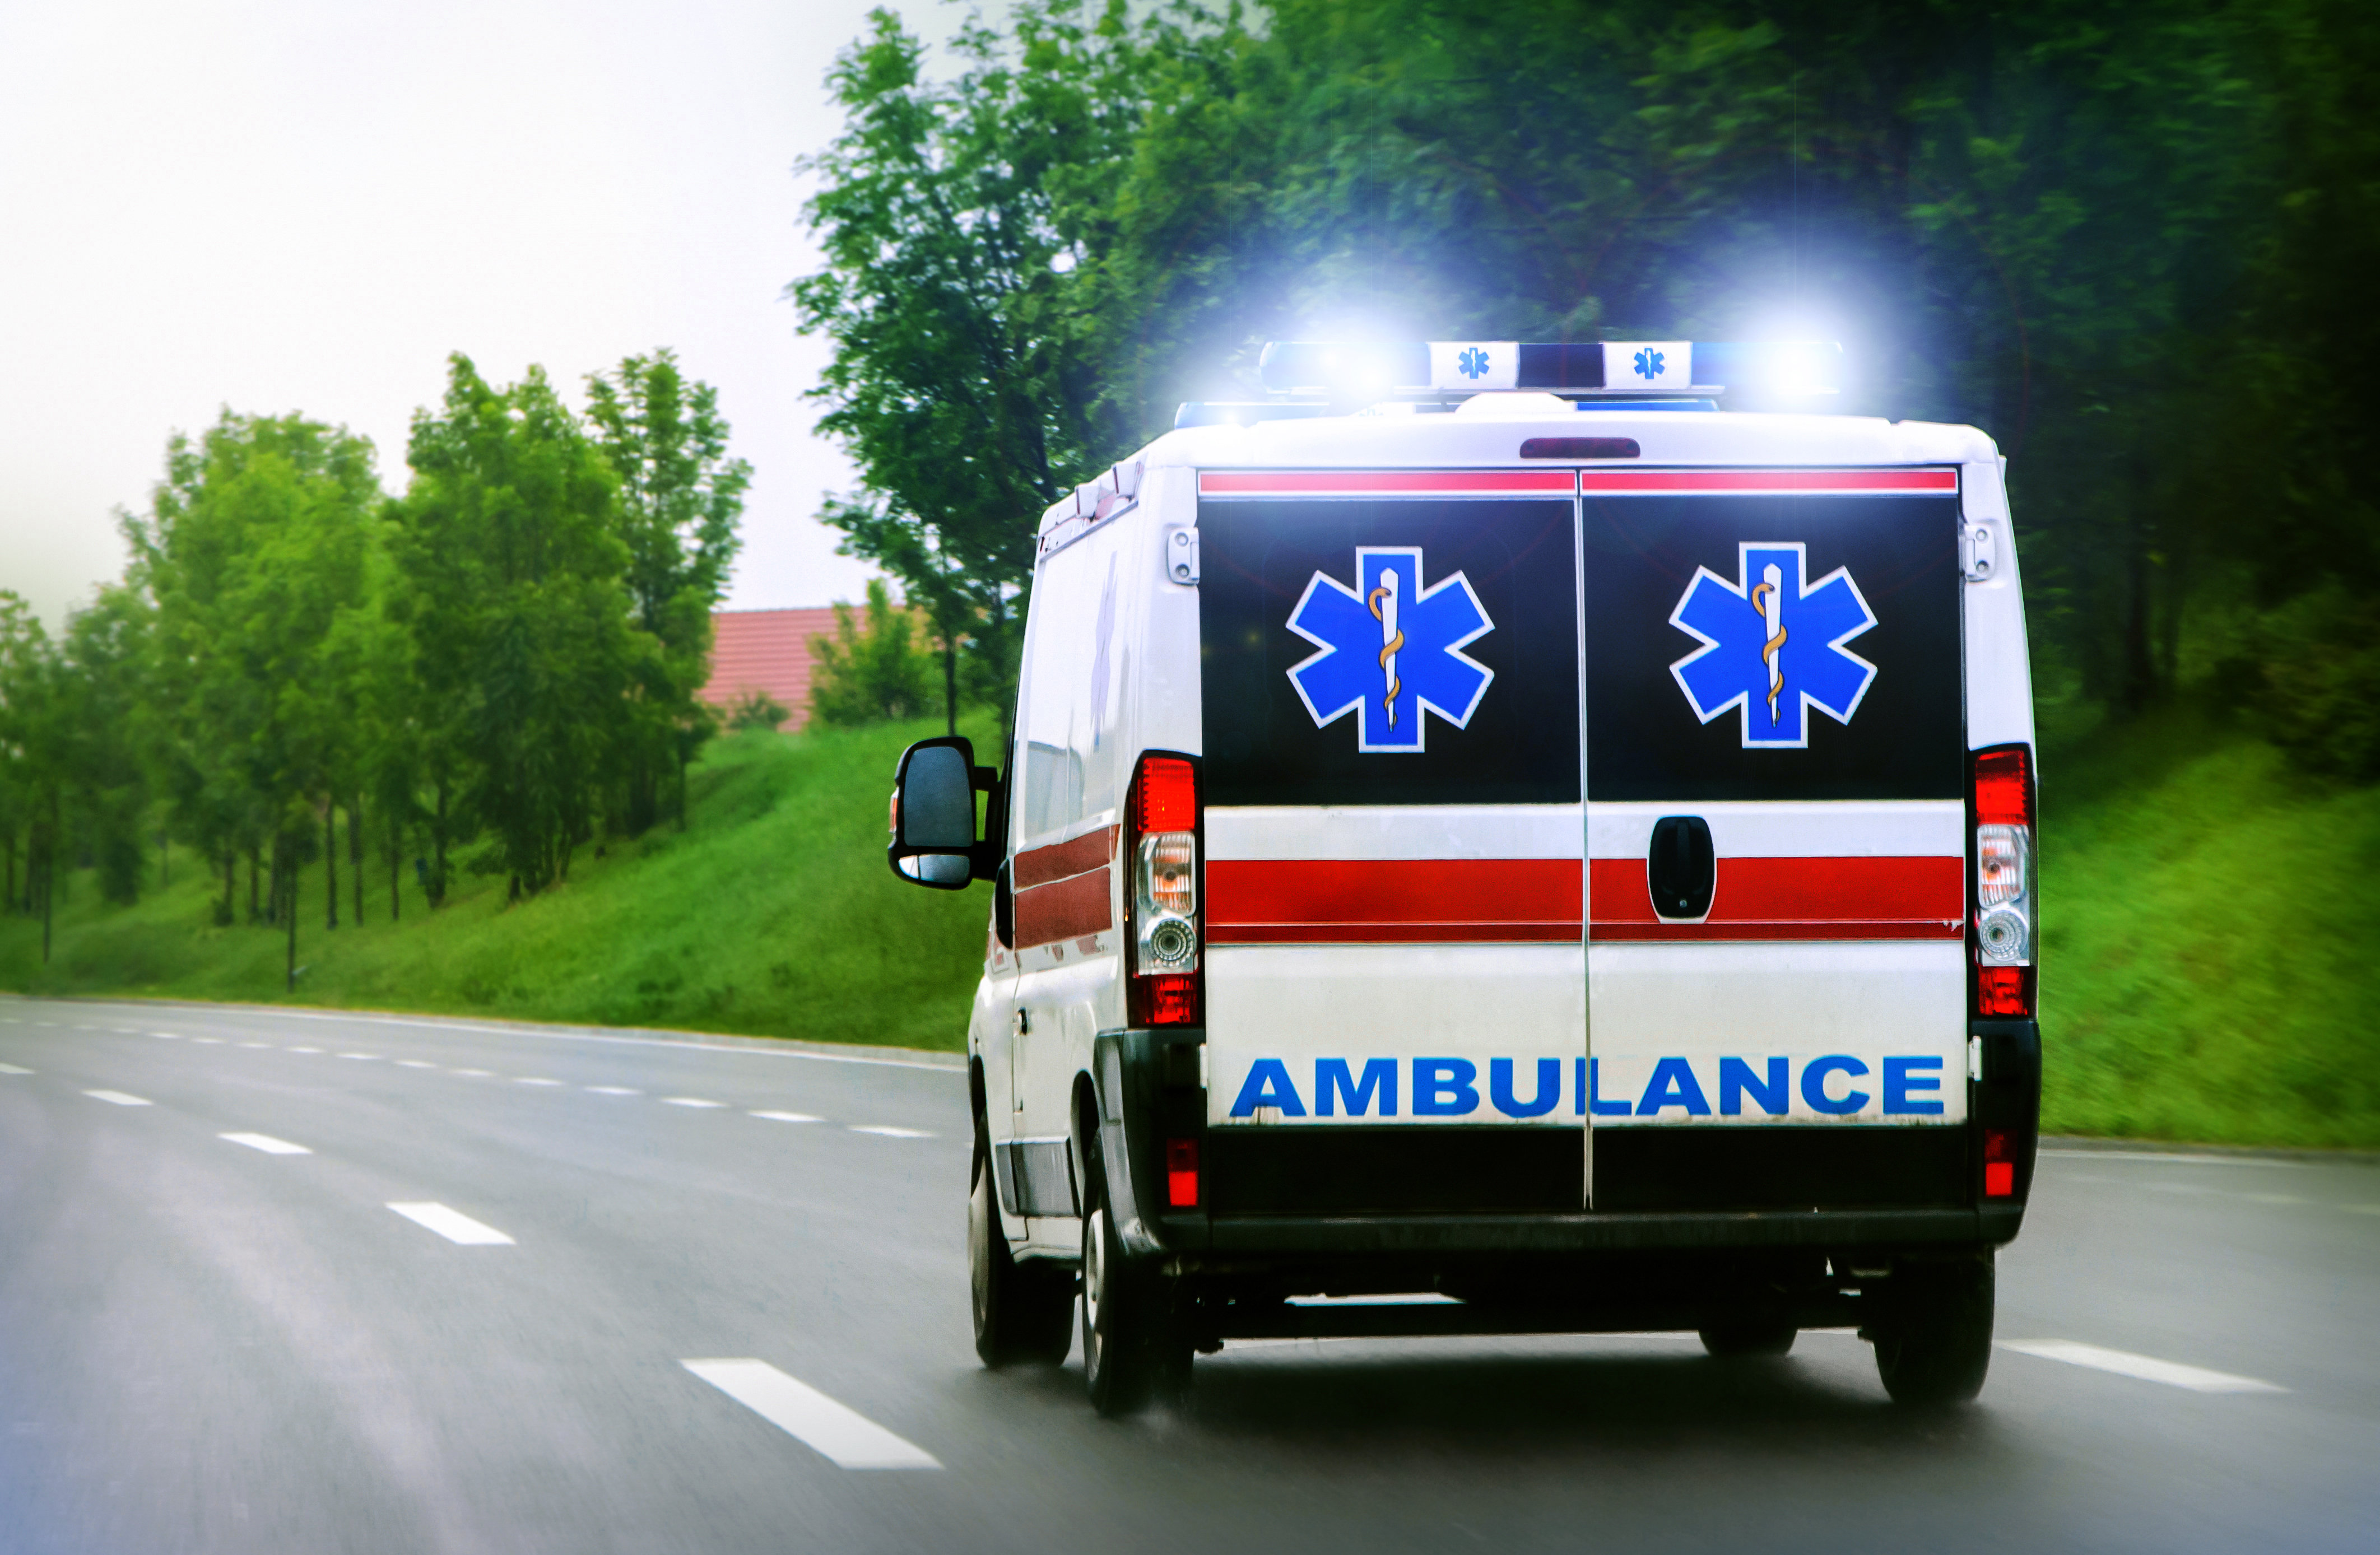 Ein Krankenwagen auf der Straße | Quelle: Shutterstock